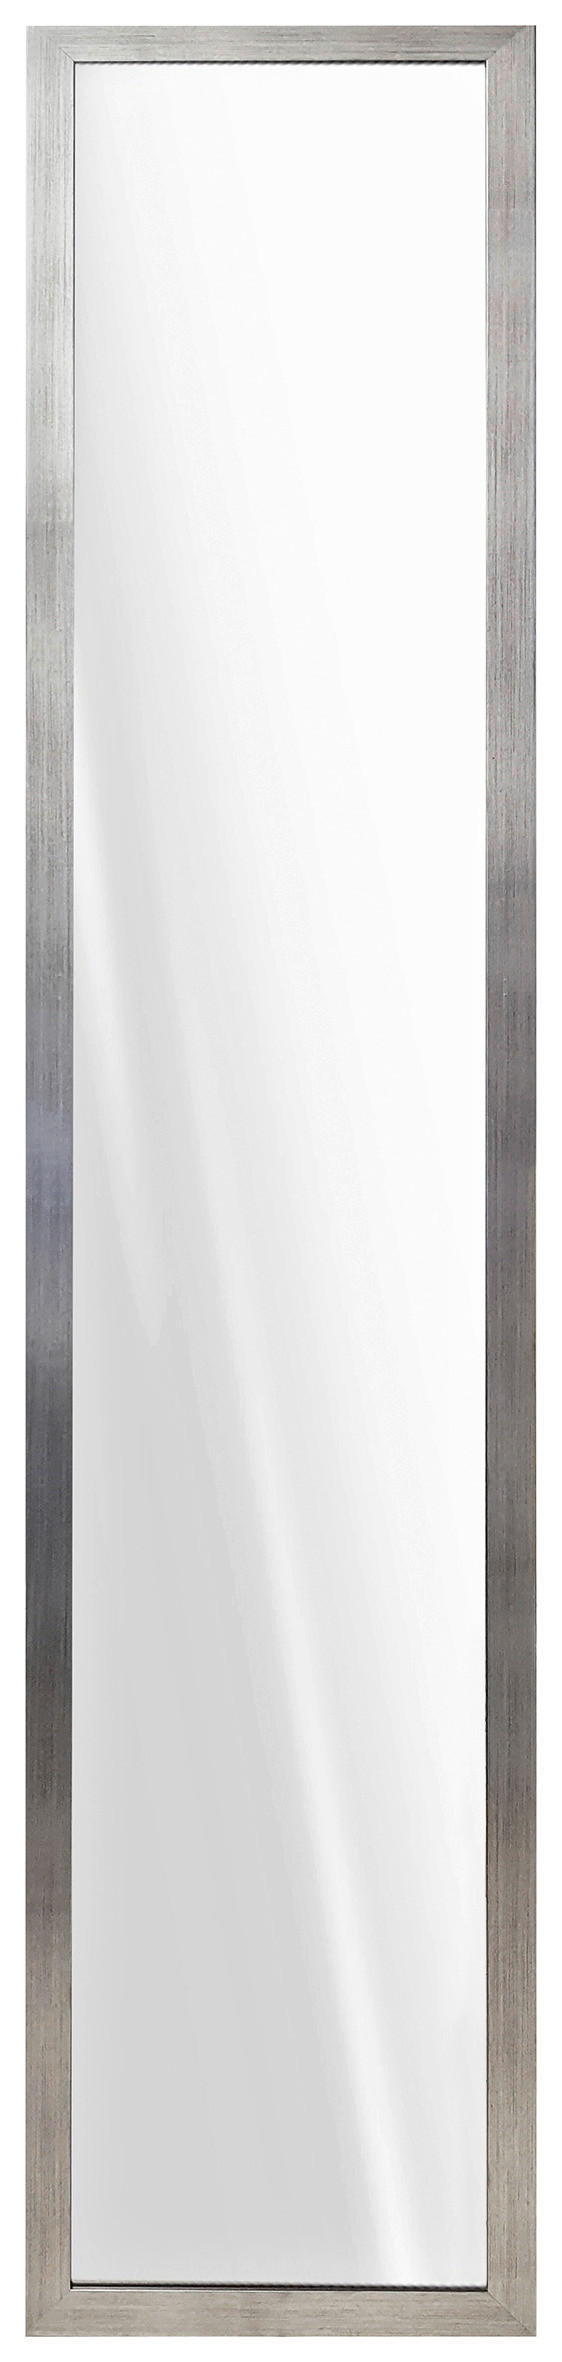 STANDSPIEGEL 36/175/3,5 cm  - Silberfarben, Design, Glas/Holzwerkstoff (36/175/3,5cm) - Carryhome